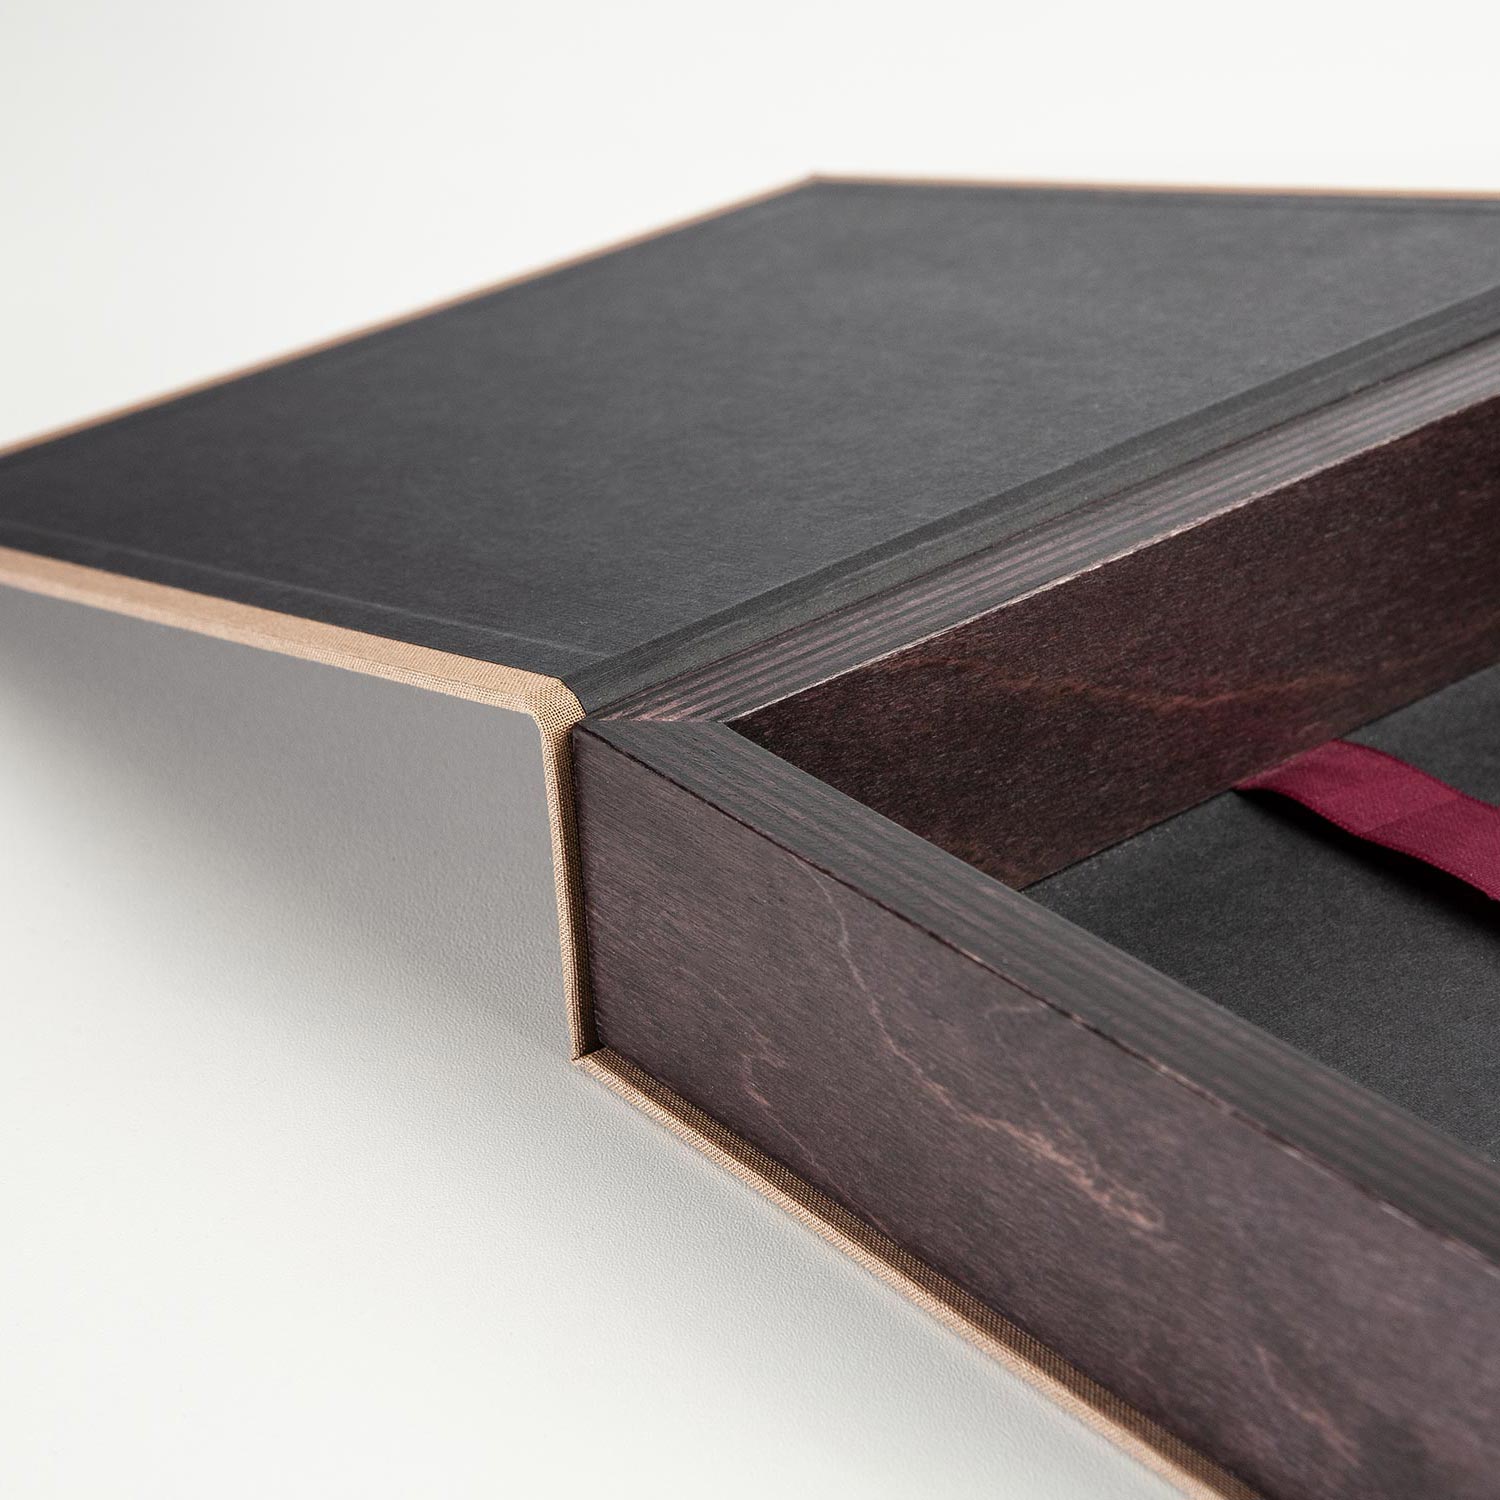 Détail du cadre de la boîte pour un livre photo de 30x30cm en brun